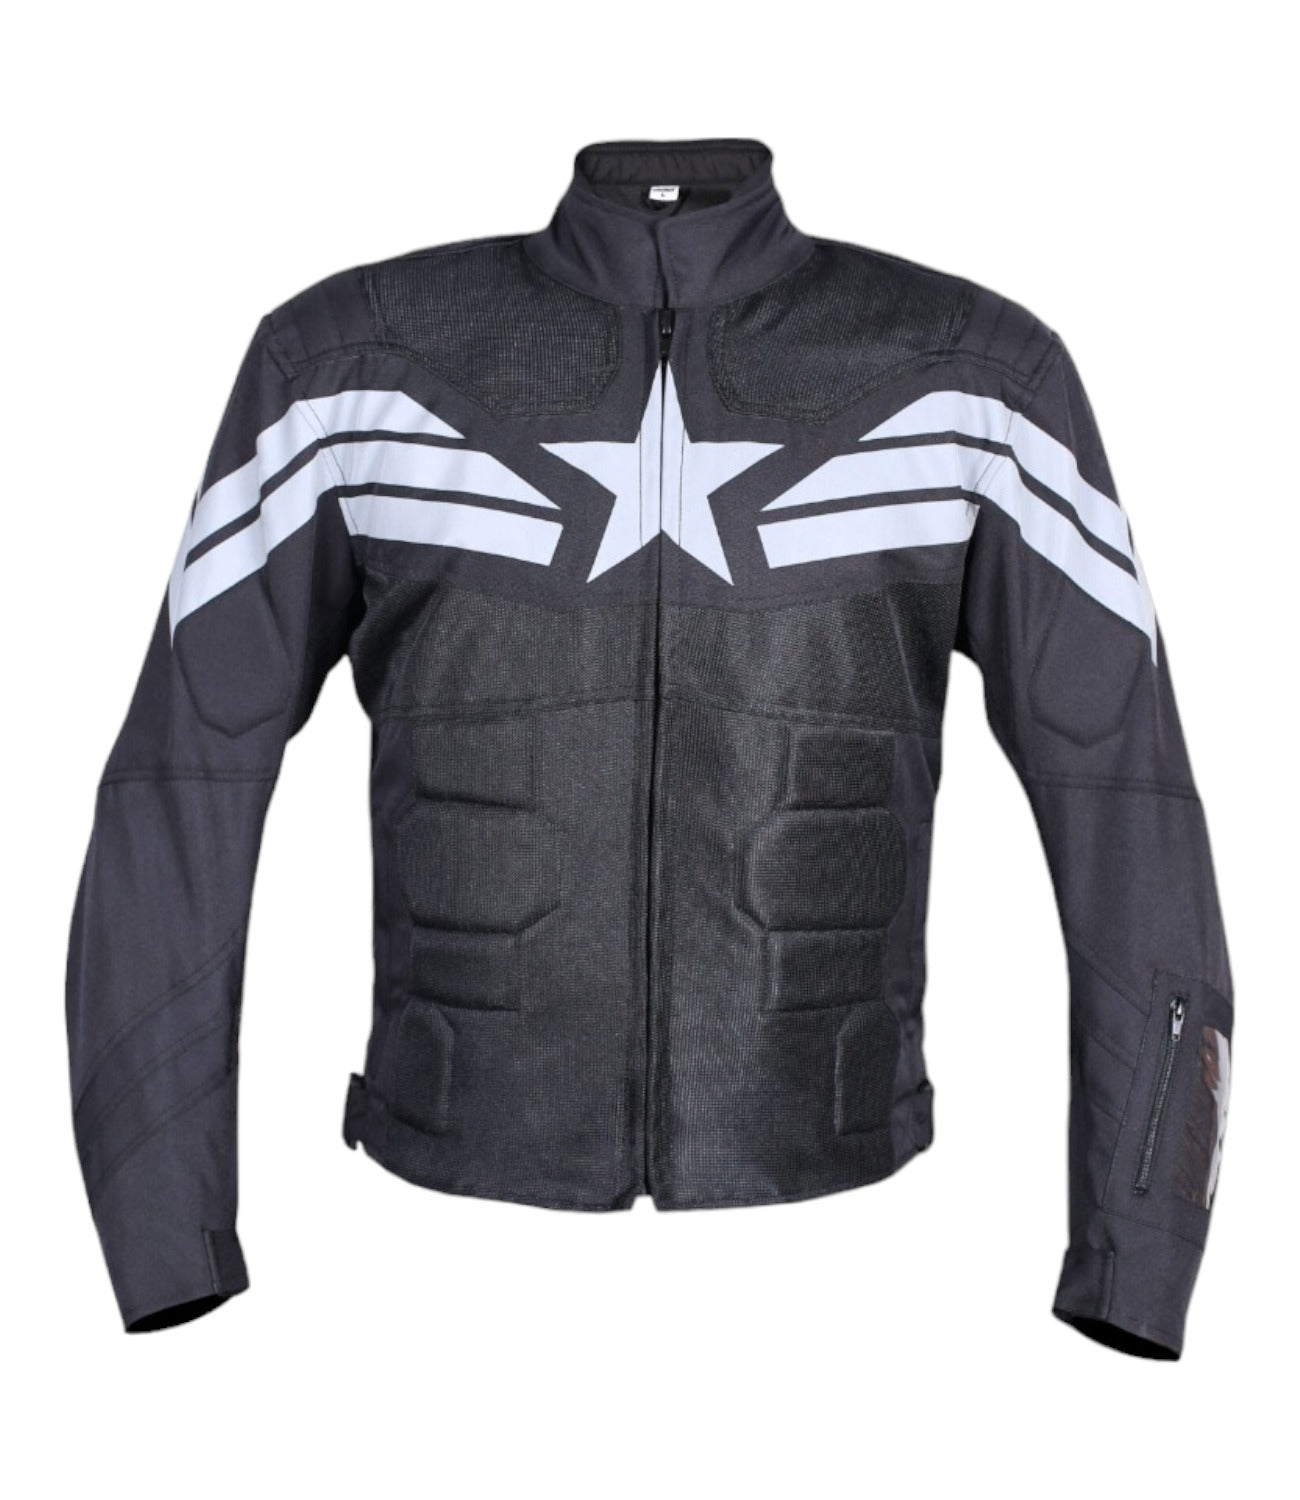 Black Leather Biker Jacket – The Voyager official